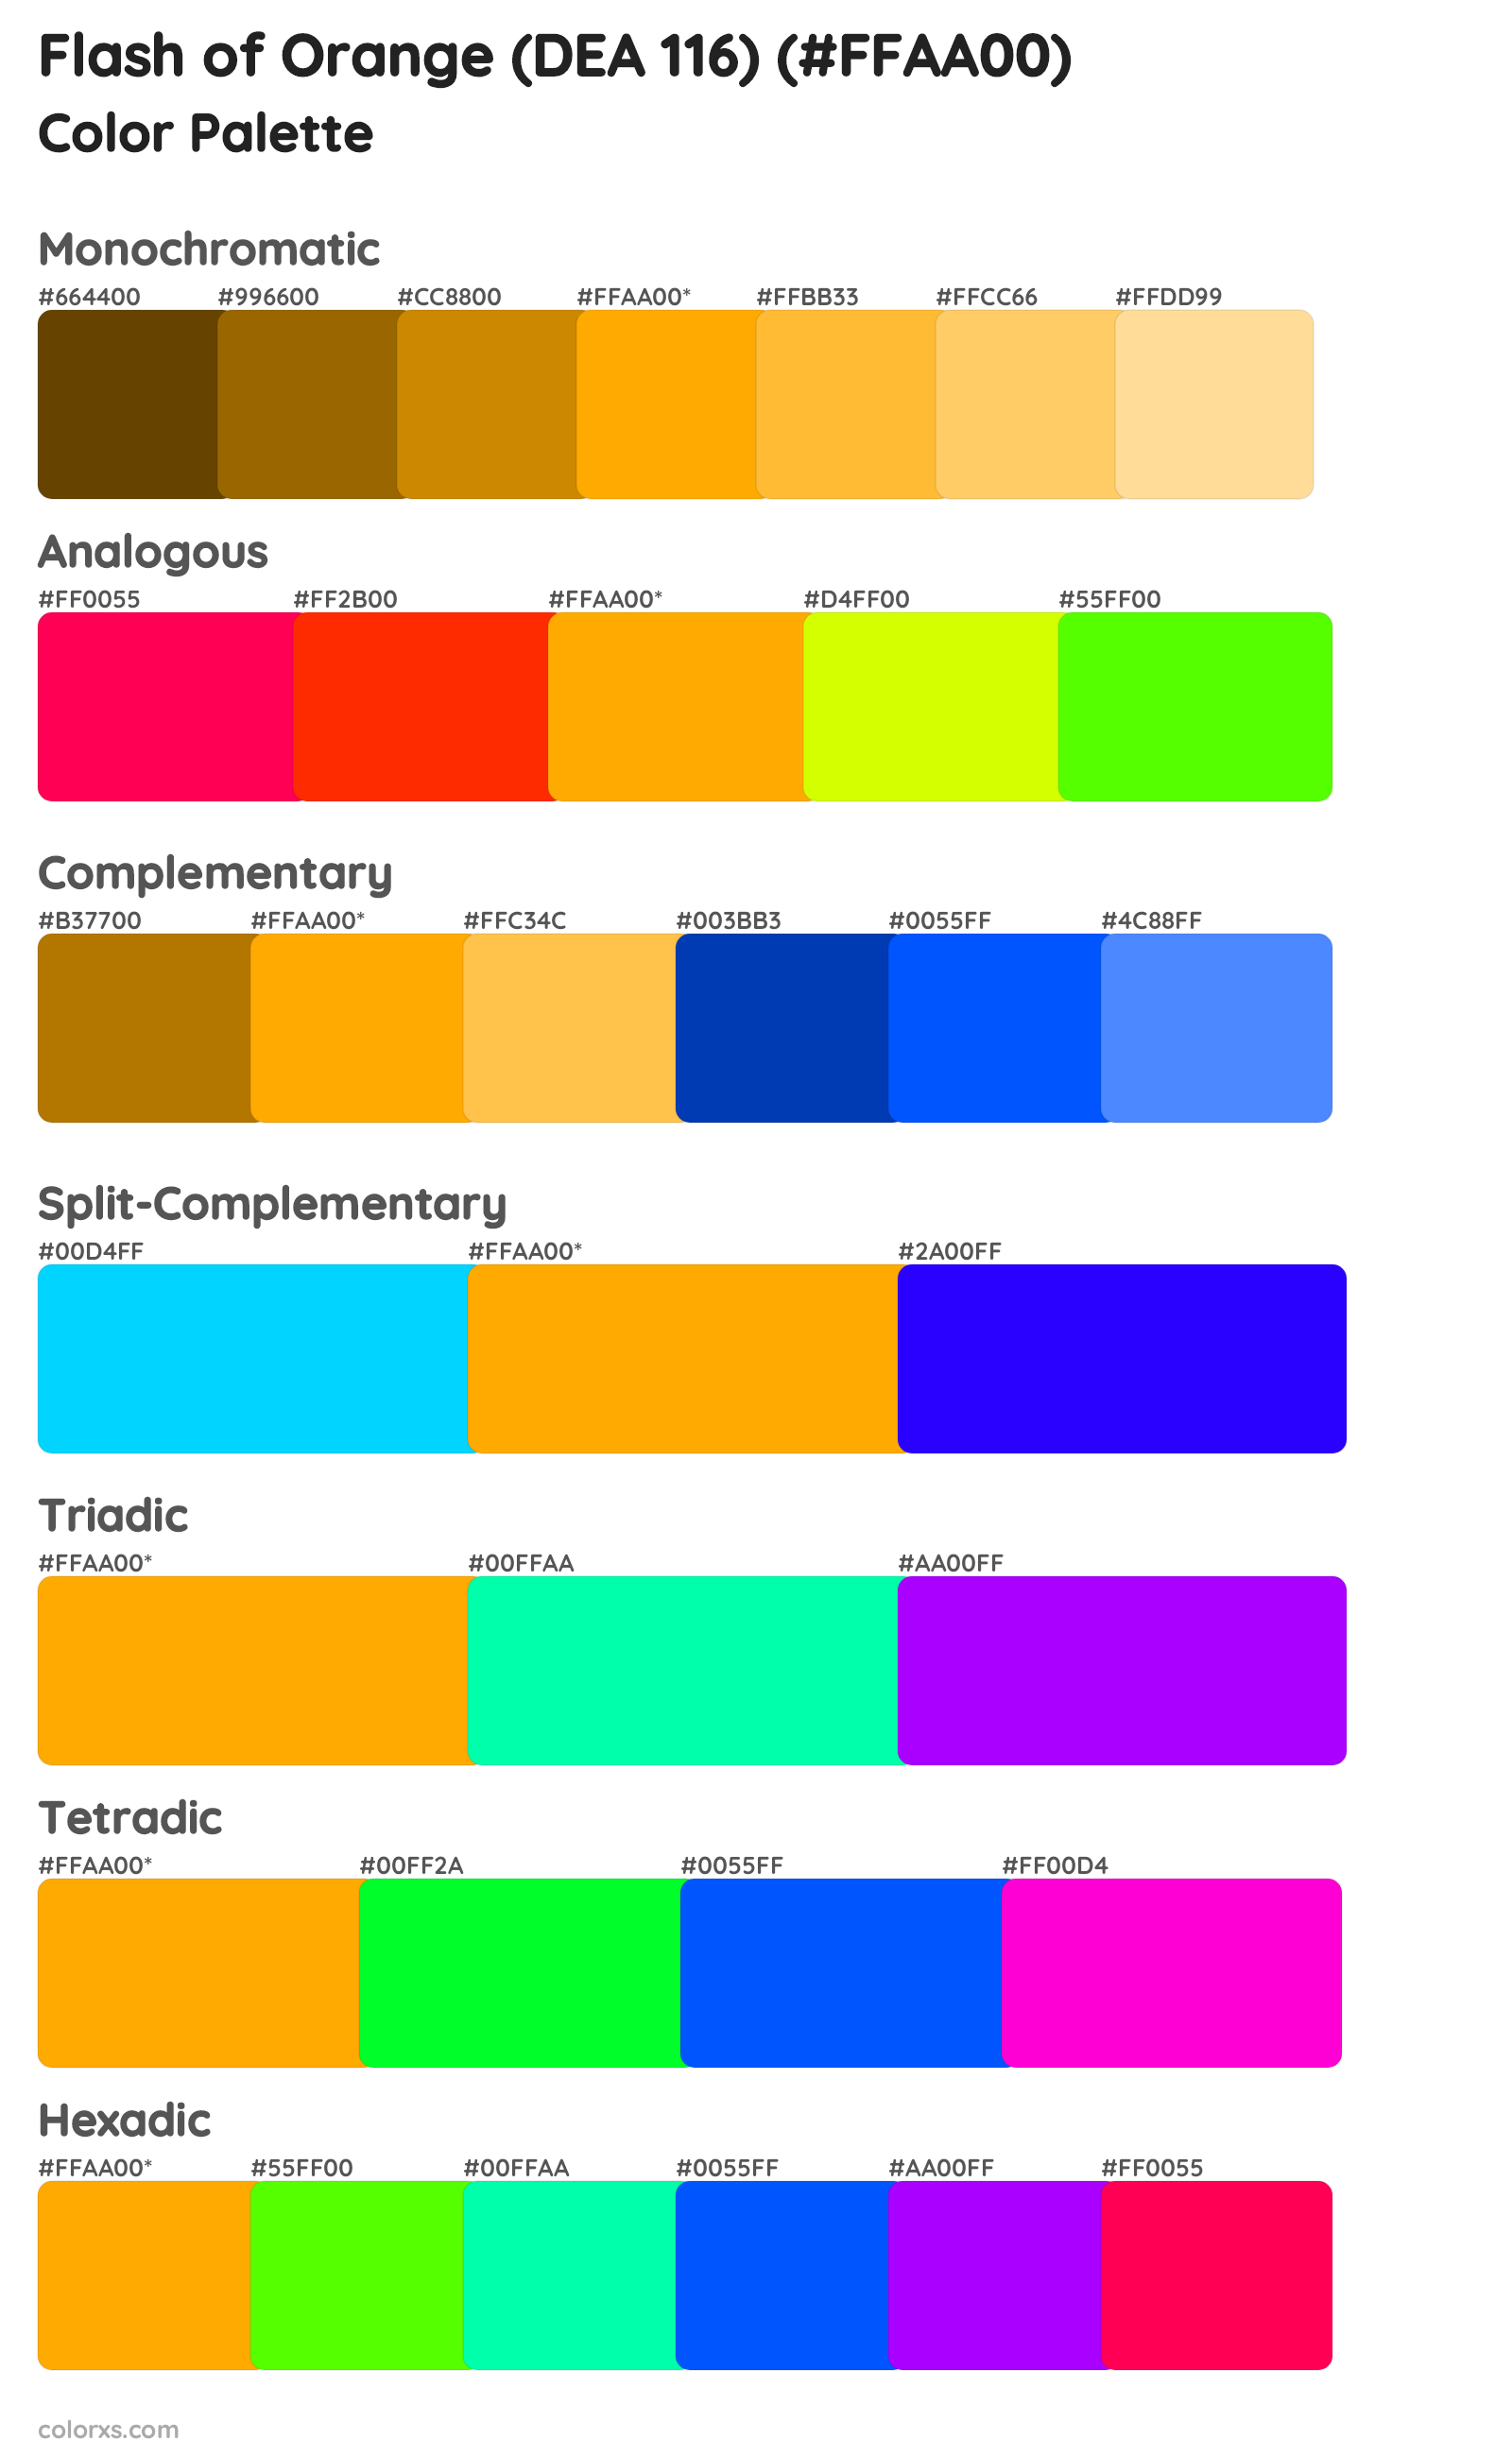 Flash of Orange (DEA 116) Color Scheme Palettes